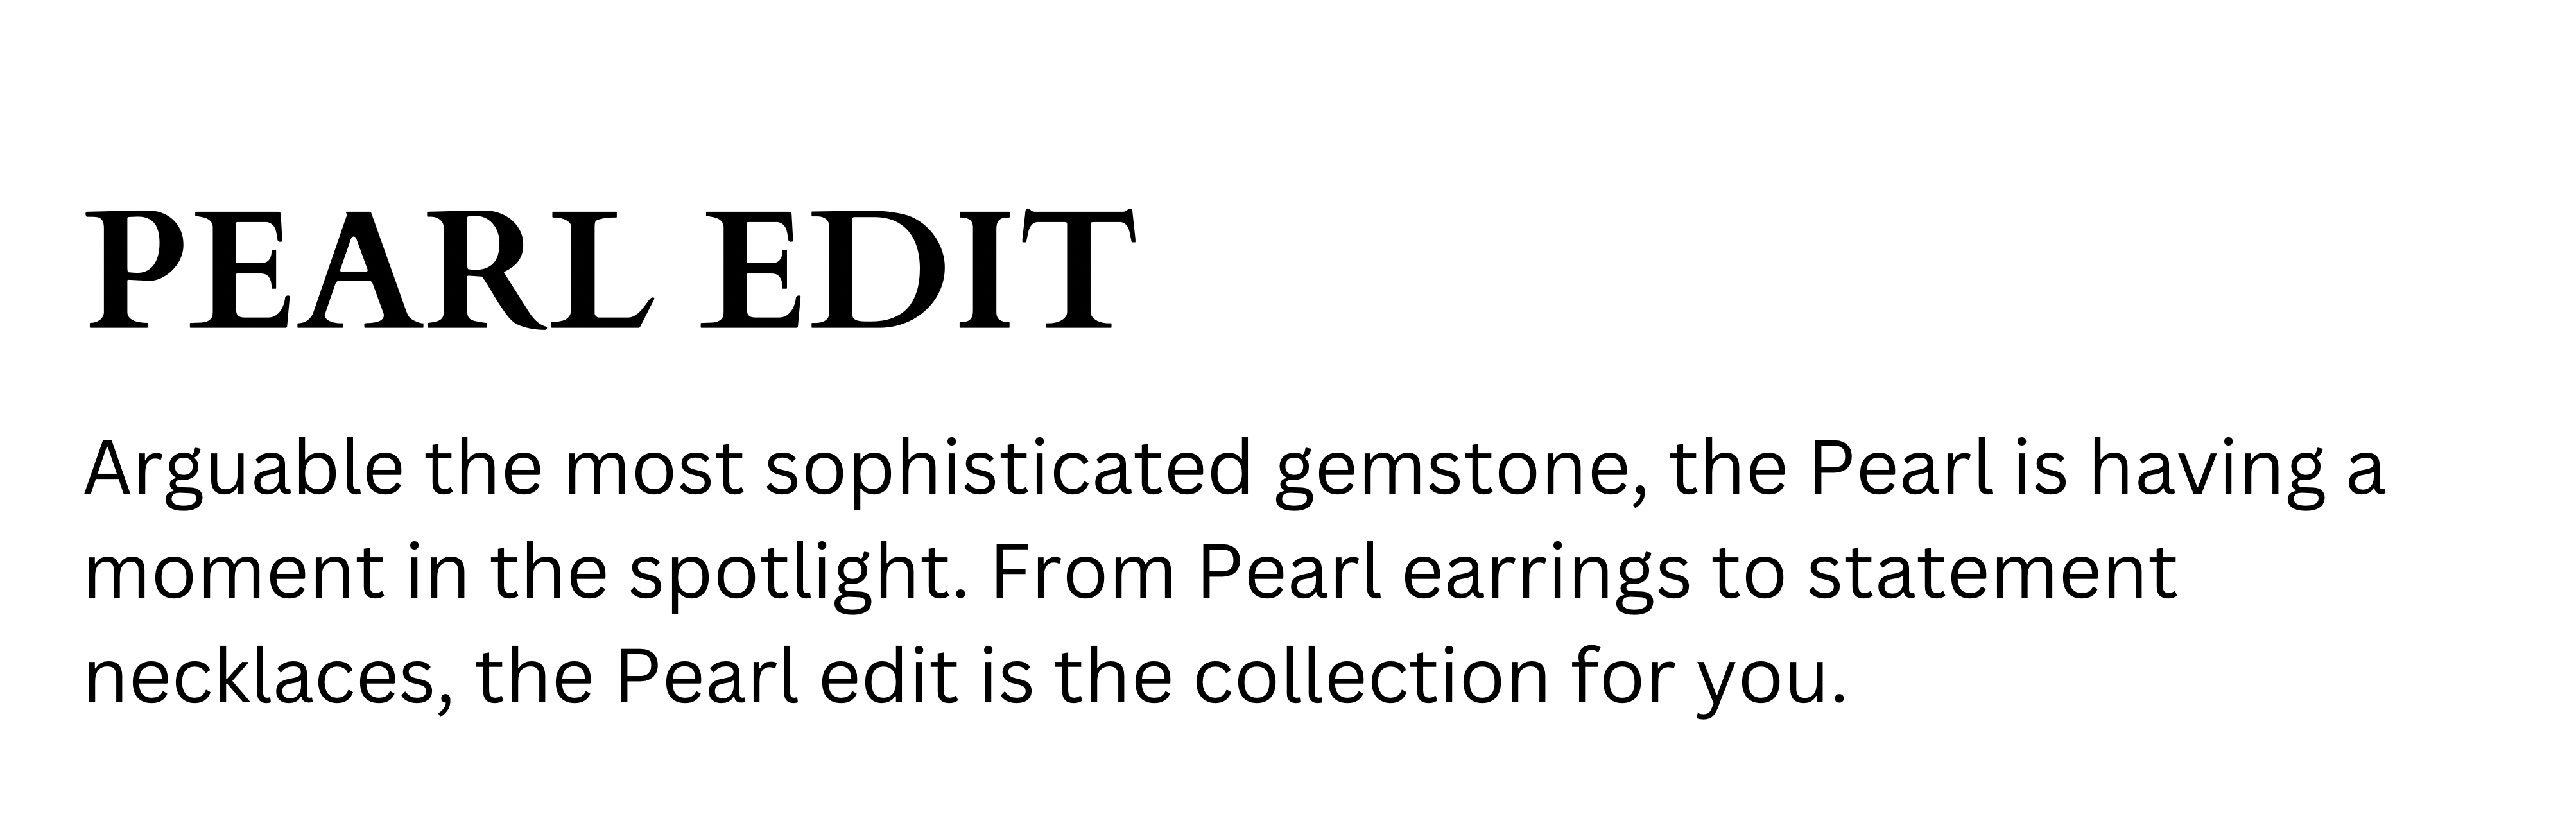 Pearl edit